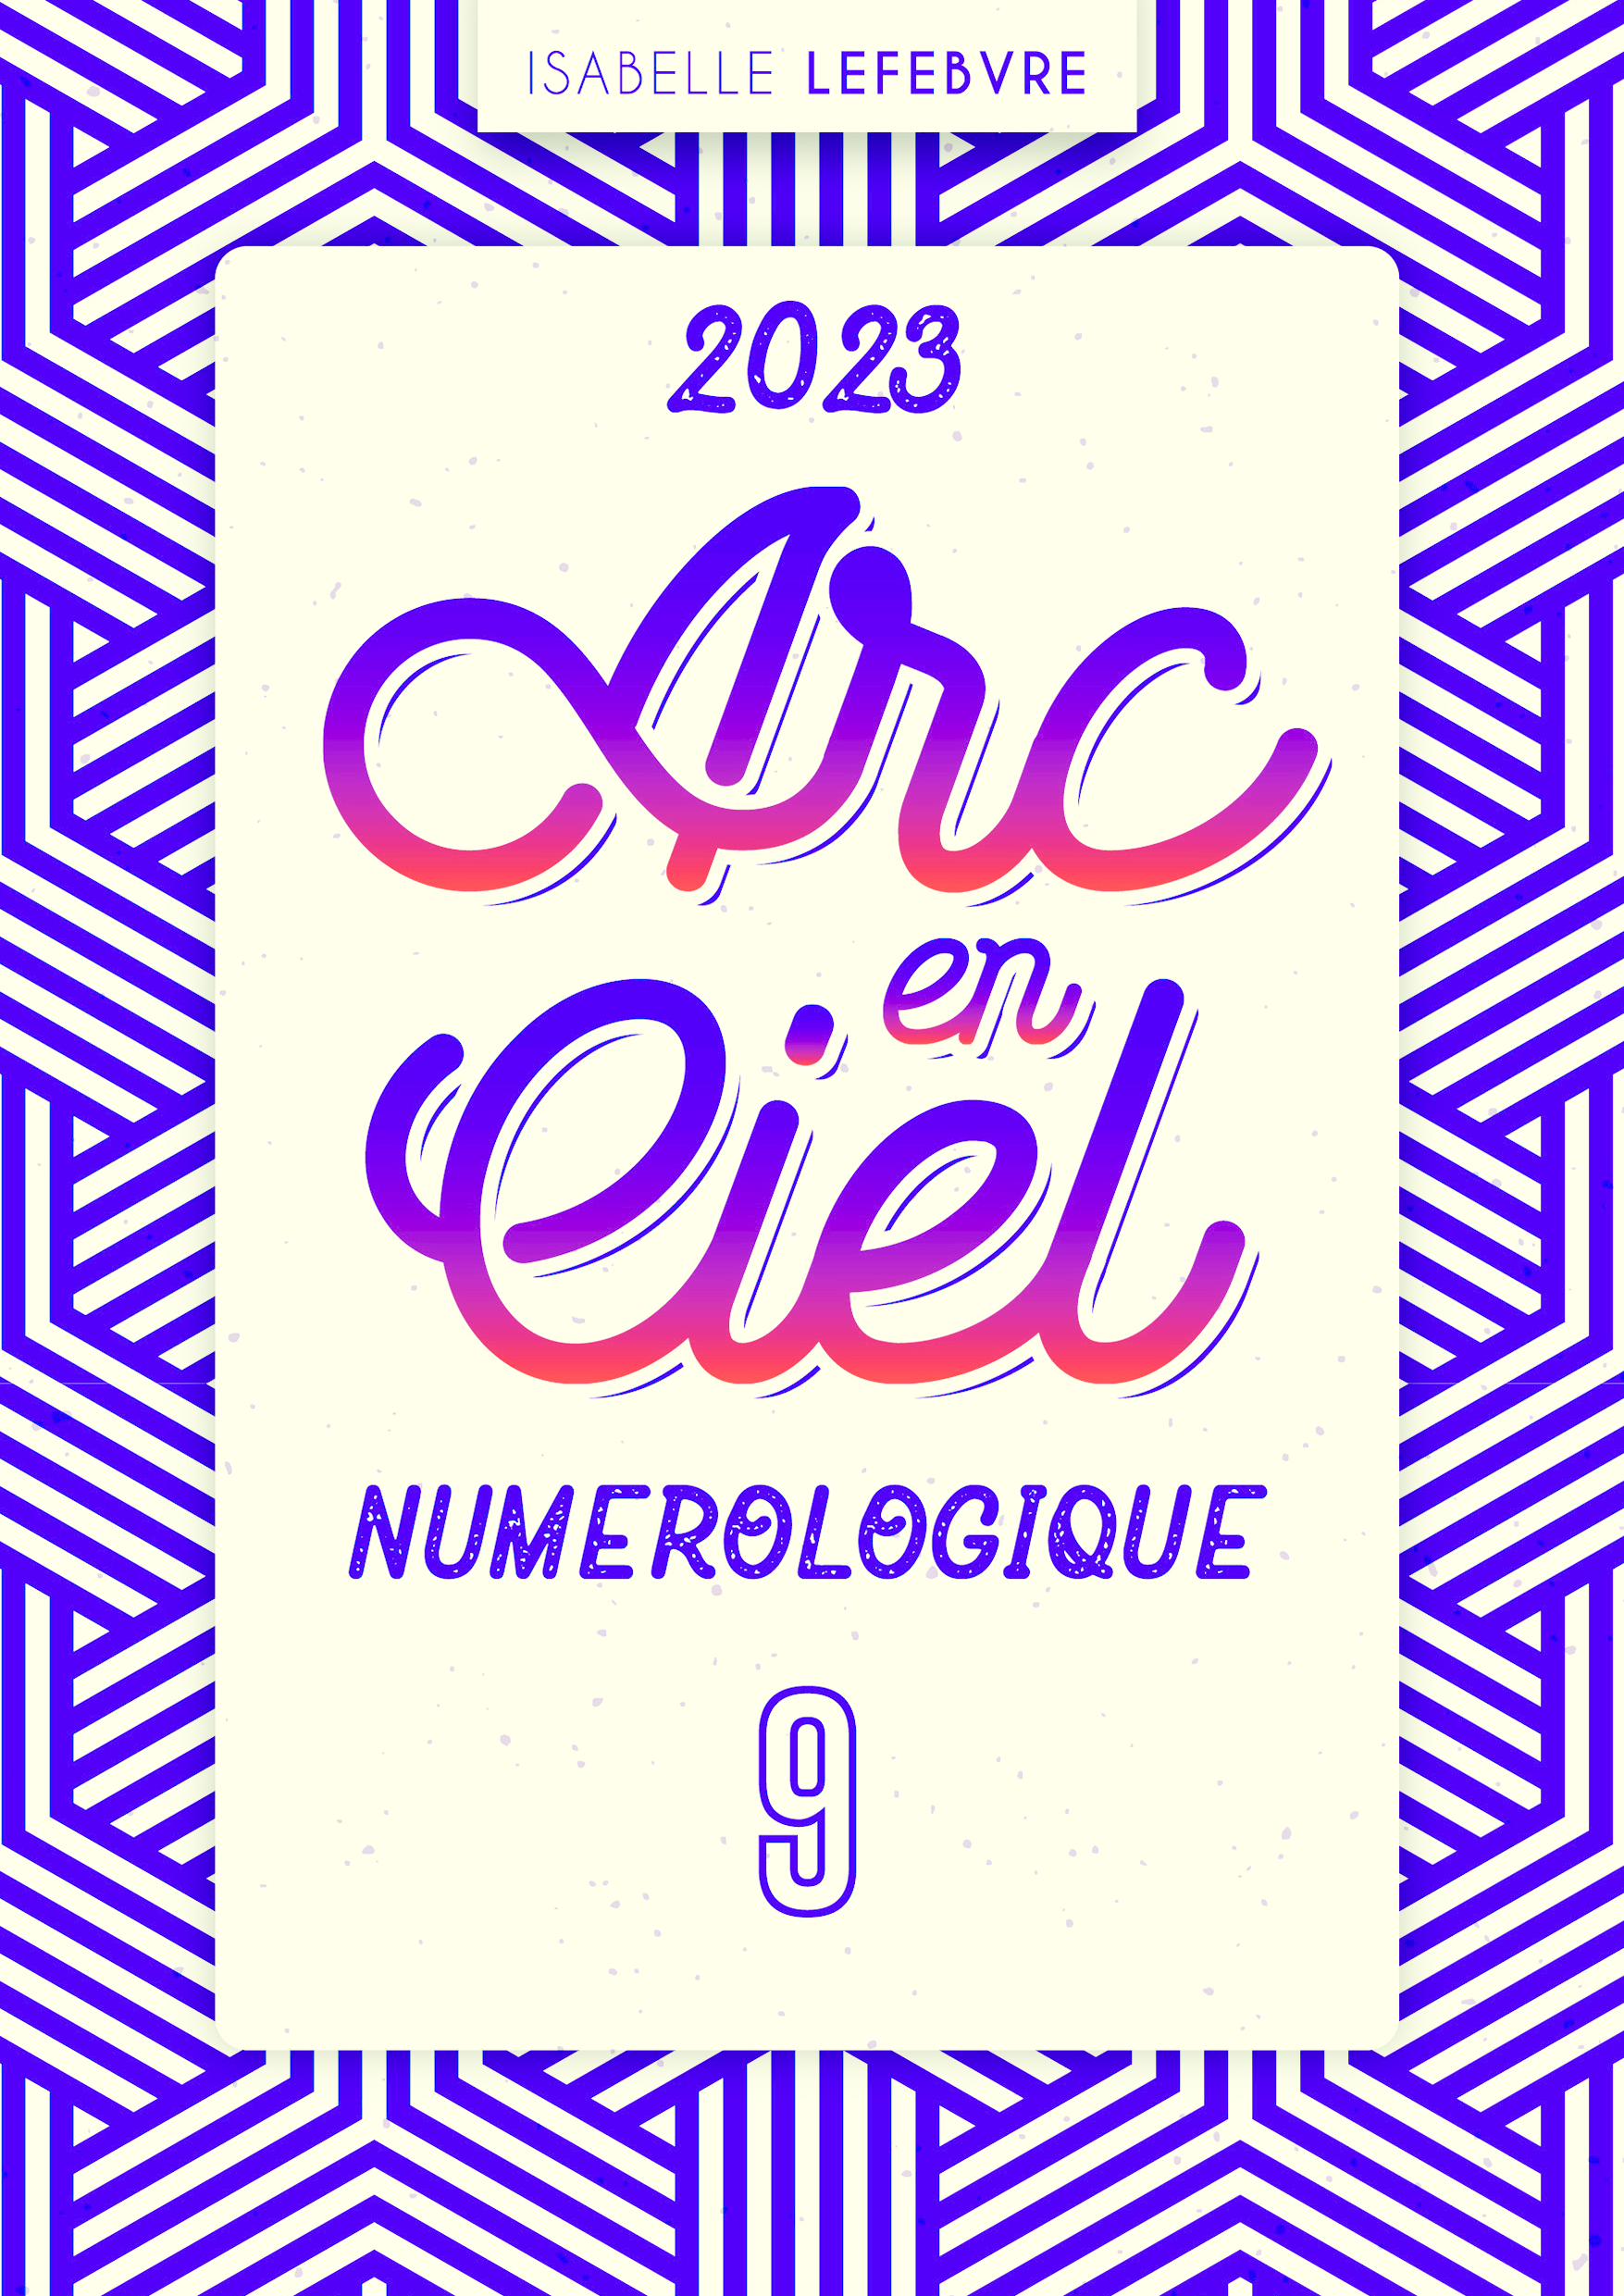 L'ARC EN CIEL NUMÉROLOGIQUE 2023 - 9